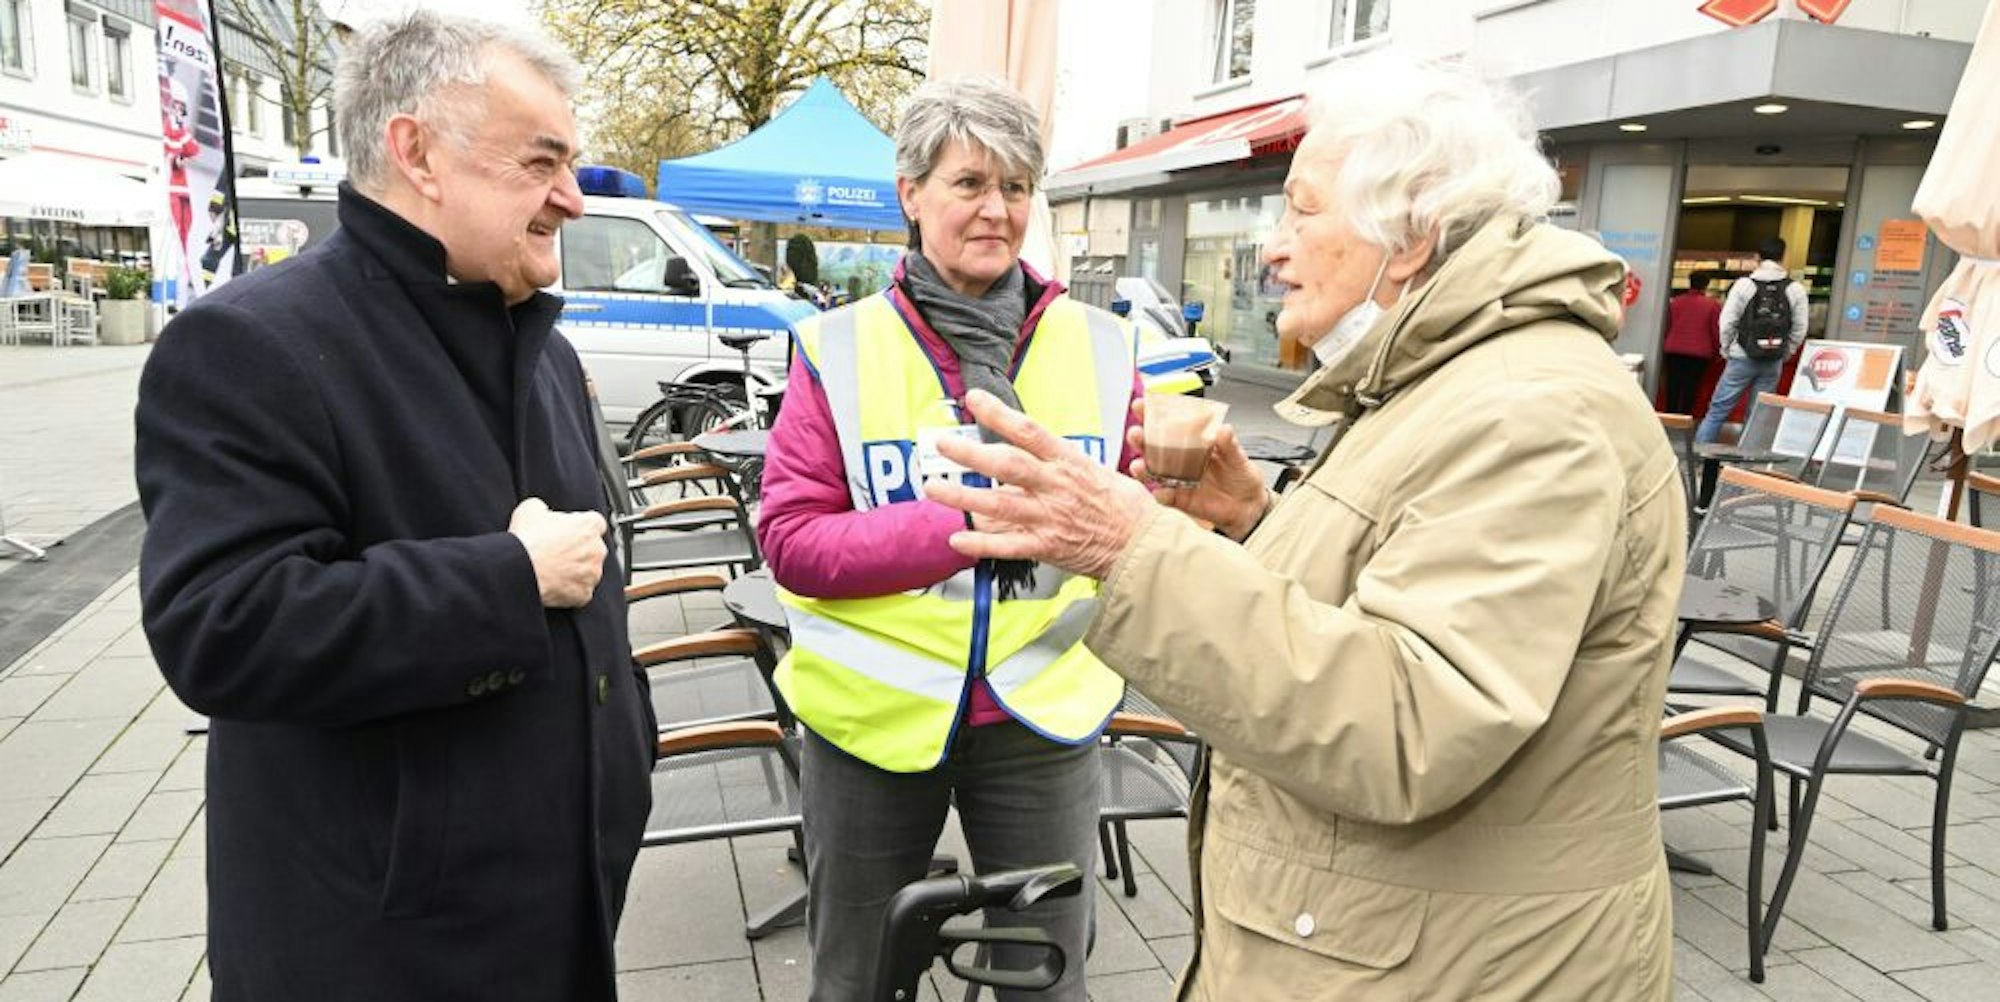 NRW-Innenminister Herbert Reul (linkes Bild, l.) im Gespräch mit Helga Henk (r.) und Claudia Kammann. Am Café-Mobil (rechtes Bild) kamen am Mittwoch zahlreiche Bürgerinnen und Bürger mit der Polizei „auf einen Kaffee“ ins Gespräch.